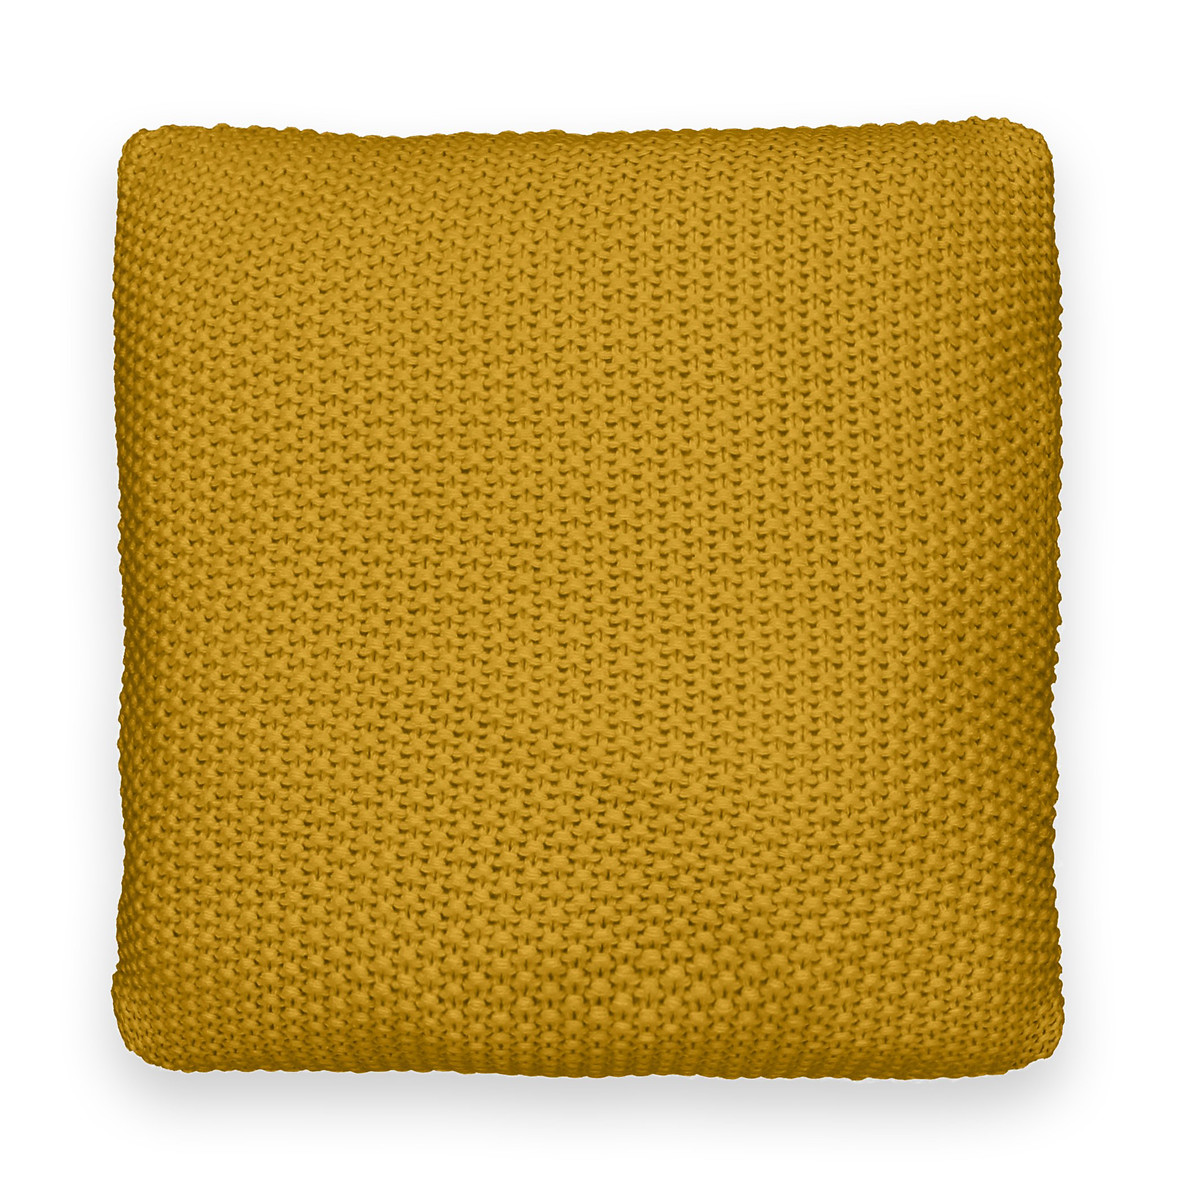 Чехол на подушку из трикотажа WESTPORT 45 x 45 см желтый